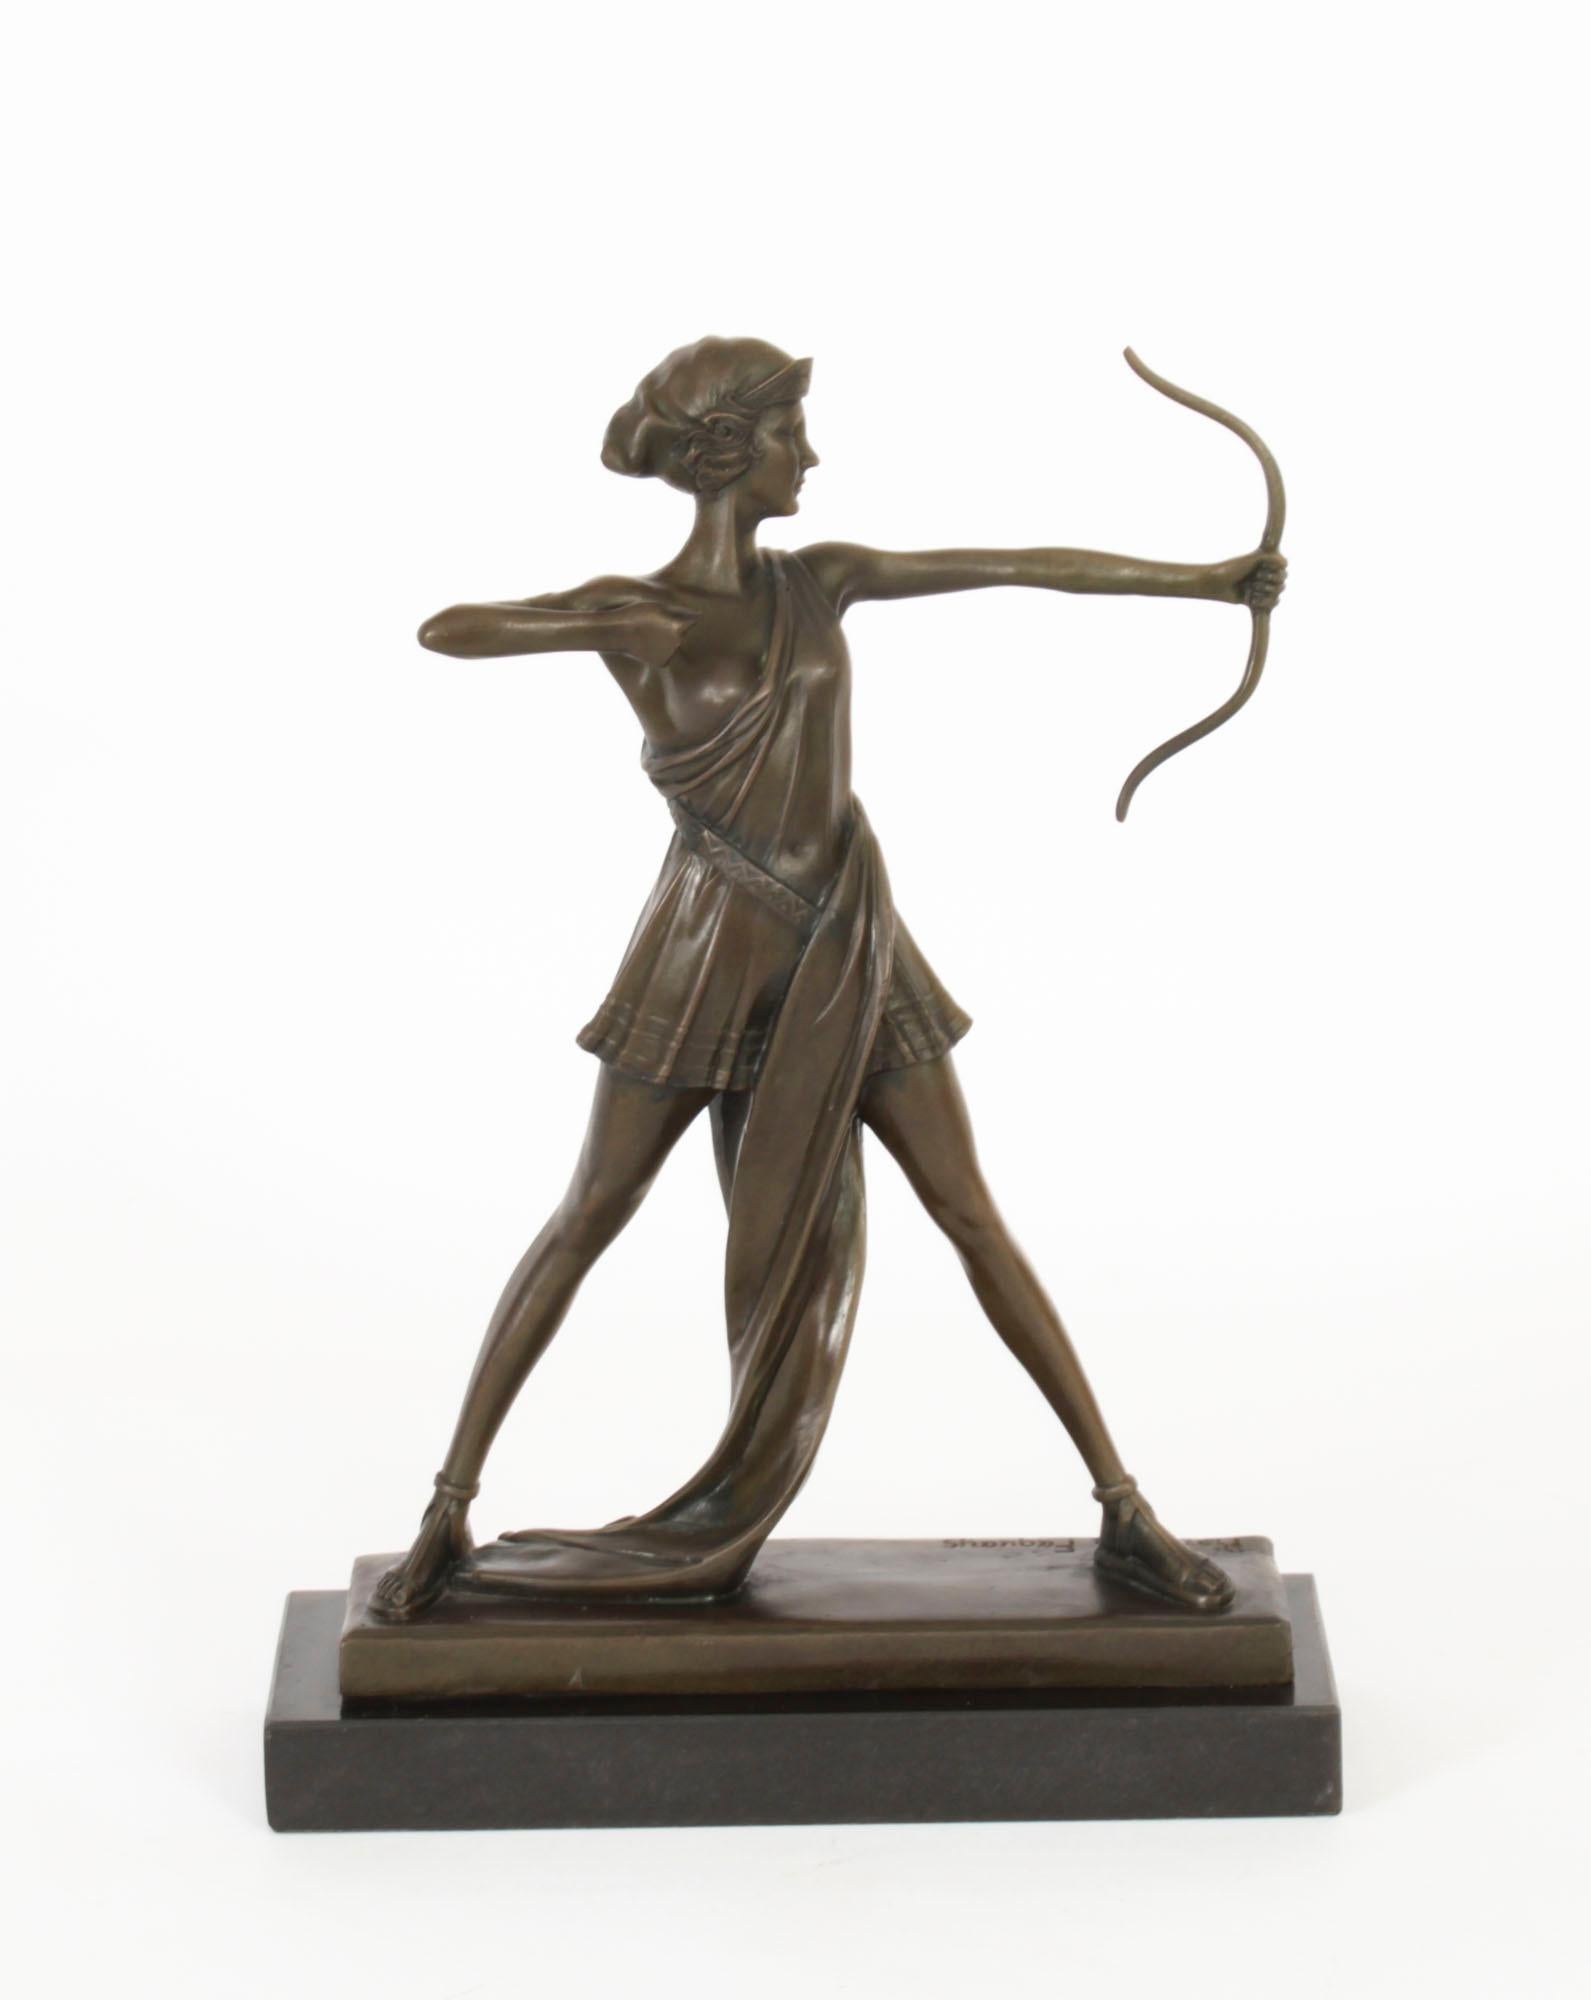 Une belle sculpture Art déco représentant Diane, signée sur la base, Pierre La Faguays (Français, 1892-1962) circa 1920 en date.

La sculpture, d'une patine brun foncé saisissante, représente Diane la chasseresse, les bras tendus et tirant un arc.